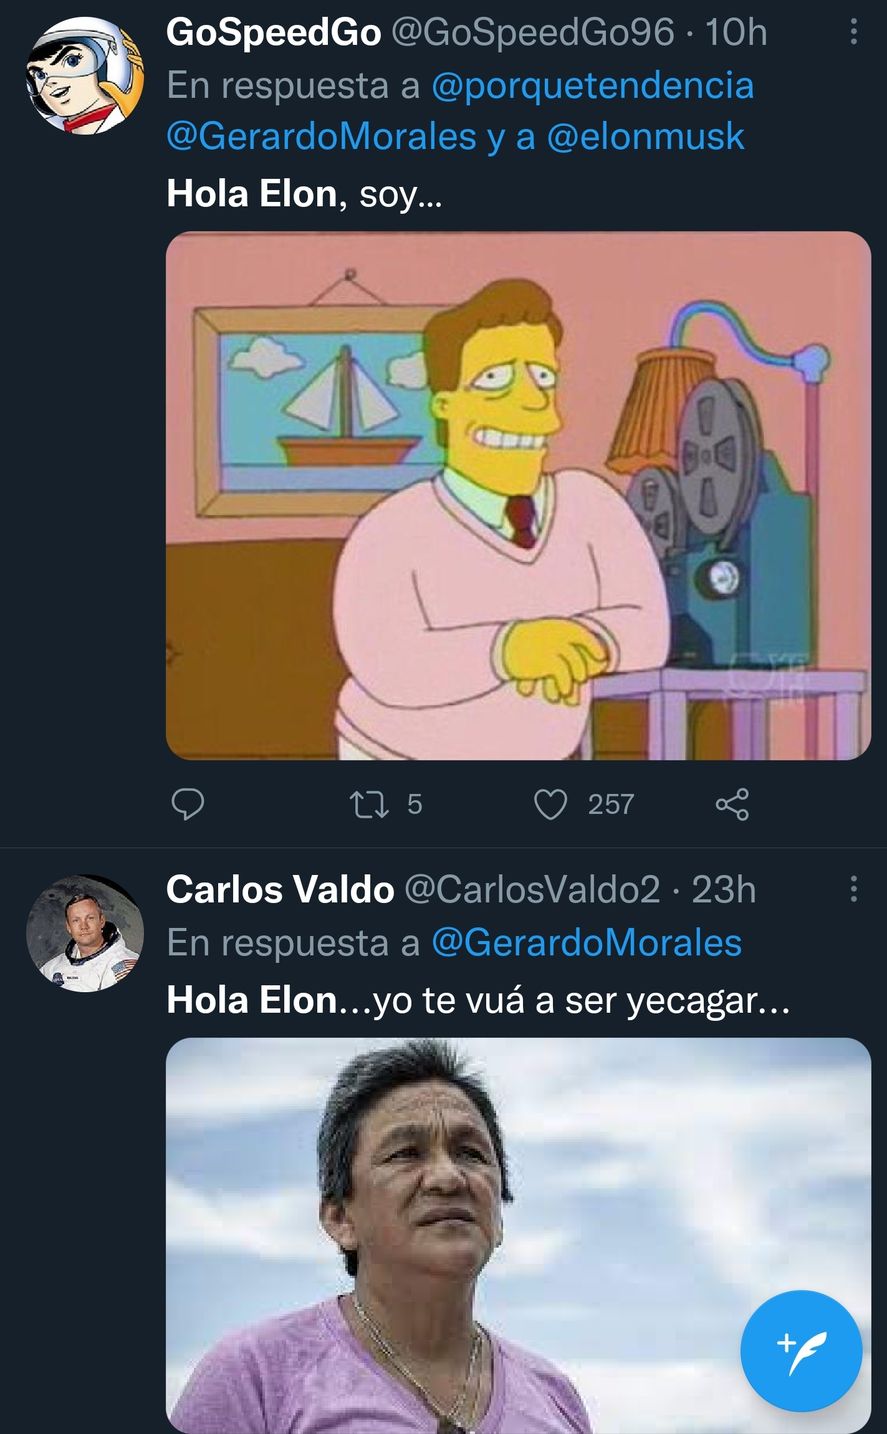 Los memes por el tweet del gobernador de Jujuy, Gerardo Morales a Elon Musk, tratando de venderle litio. Troy McClure de los Simpsons y Milagro Sala